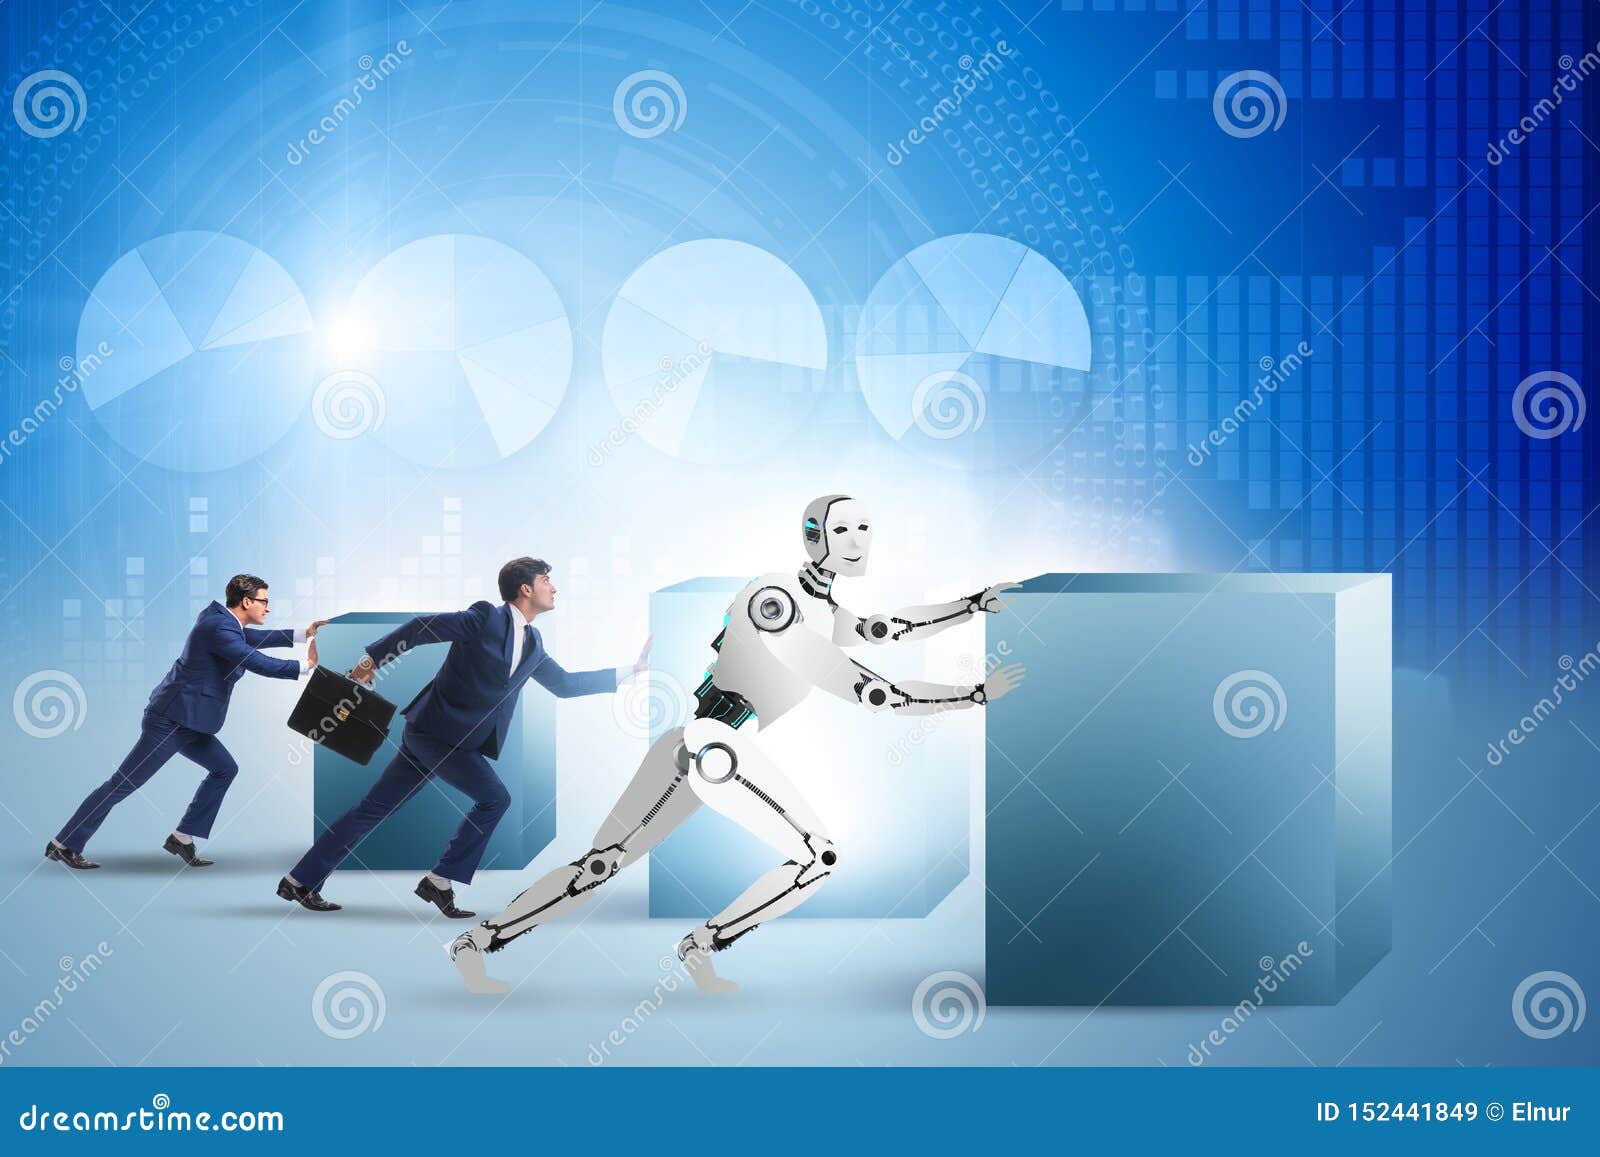 Competition between. Конкуренция между искусственным интеллектом и человеком. Человек робот автомат компьютер который выполняет чьи-то команды это.